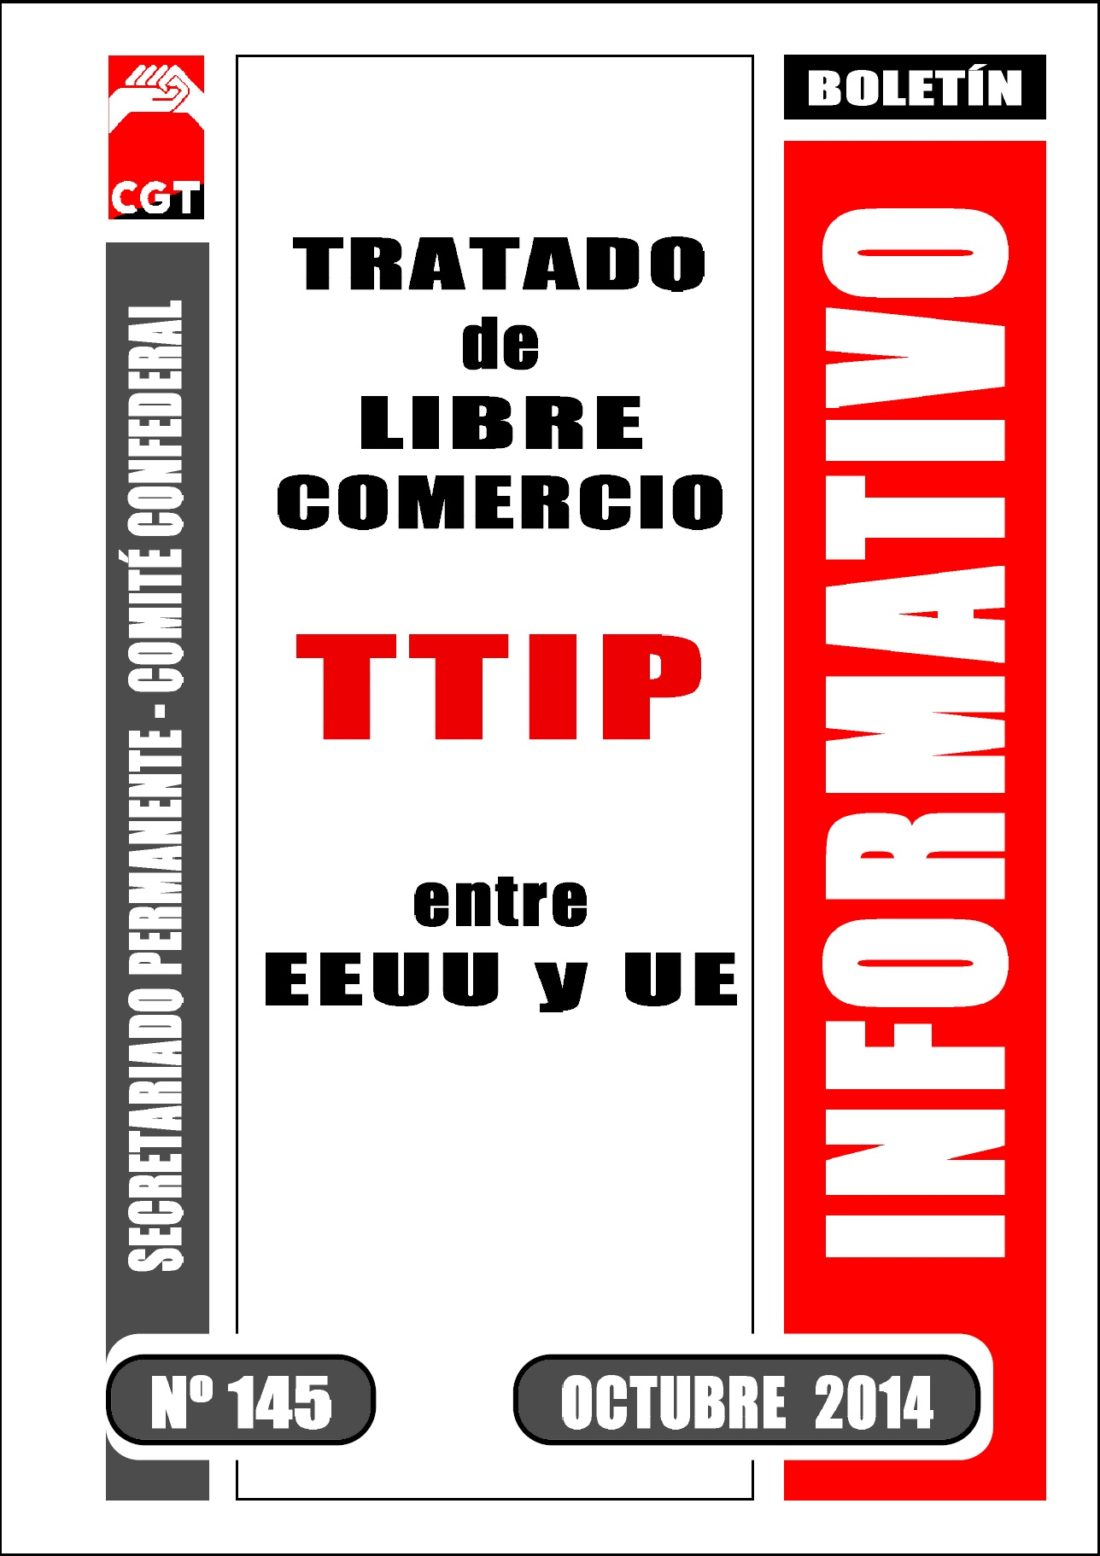 Boletín 145: Tratado de “Libre Comercio” (TTIP), entre EEUU y la U€